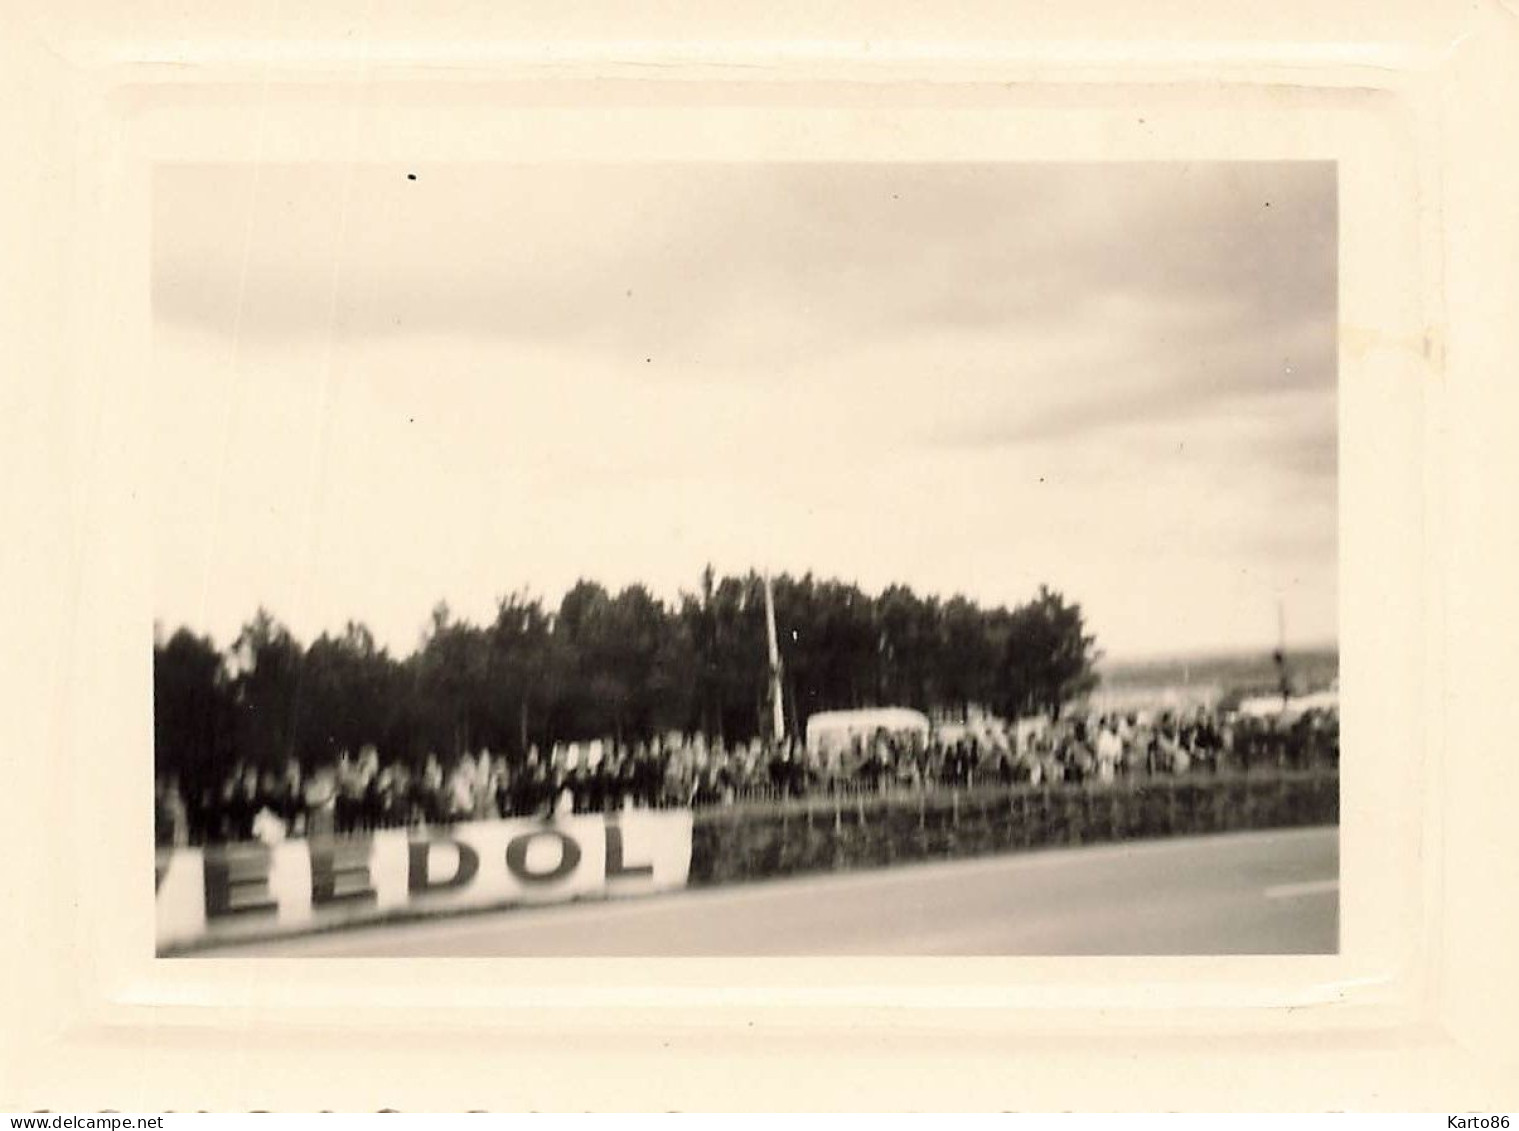 24heures du mans 1954 * 8 photos anciennes * voiture de course pilotes automobiles circuit * course 24H * 10.4x7.5cm